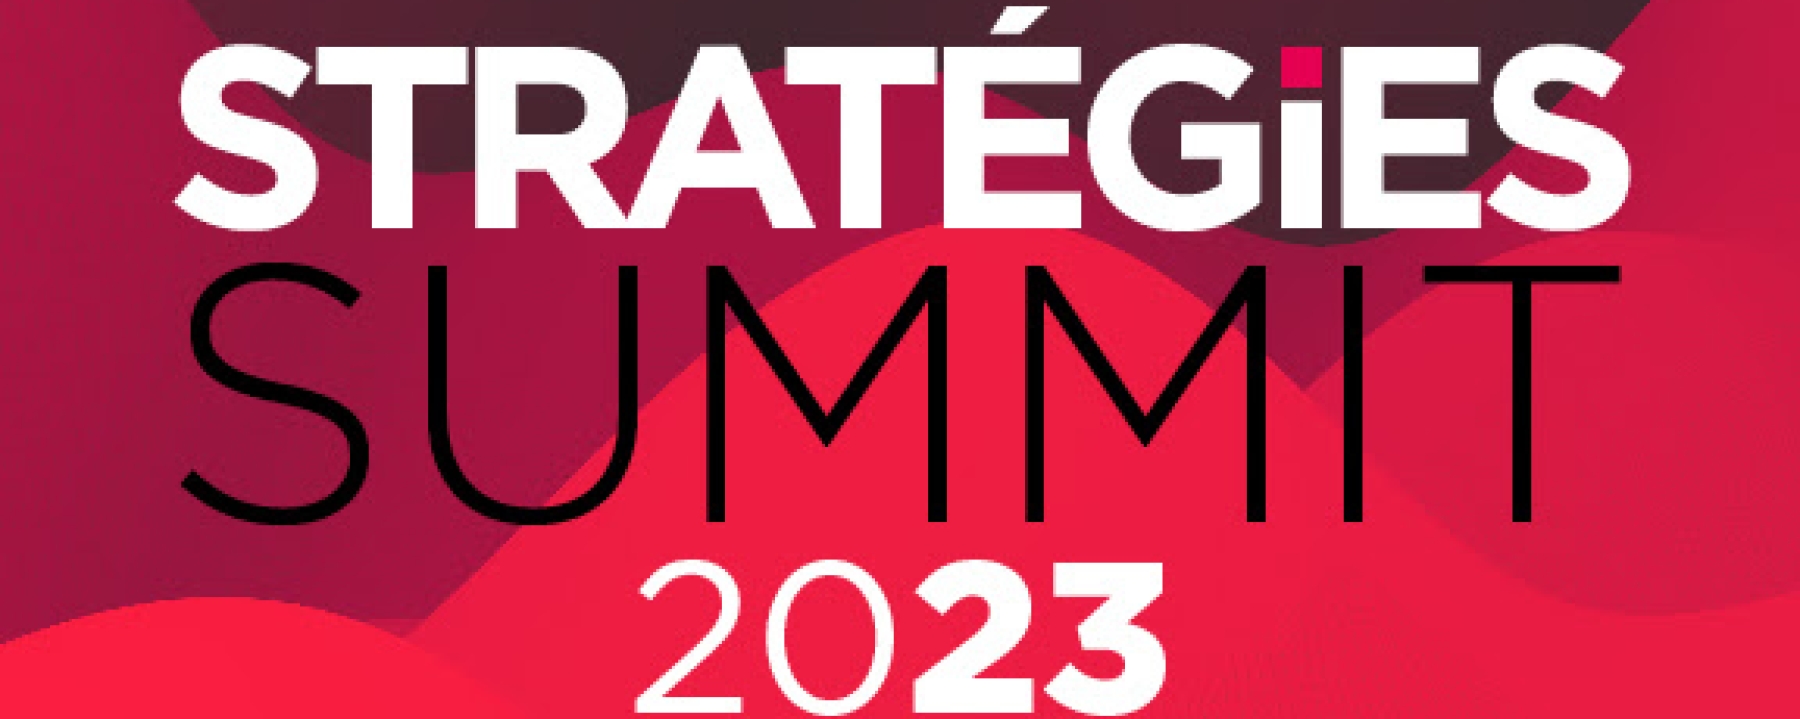 Stratégies Summit 2023